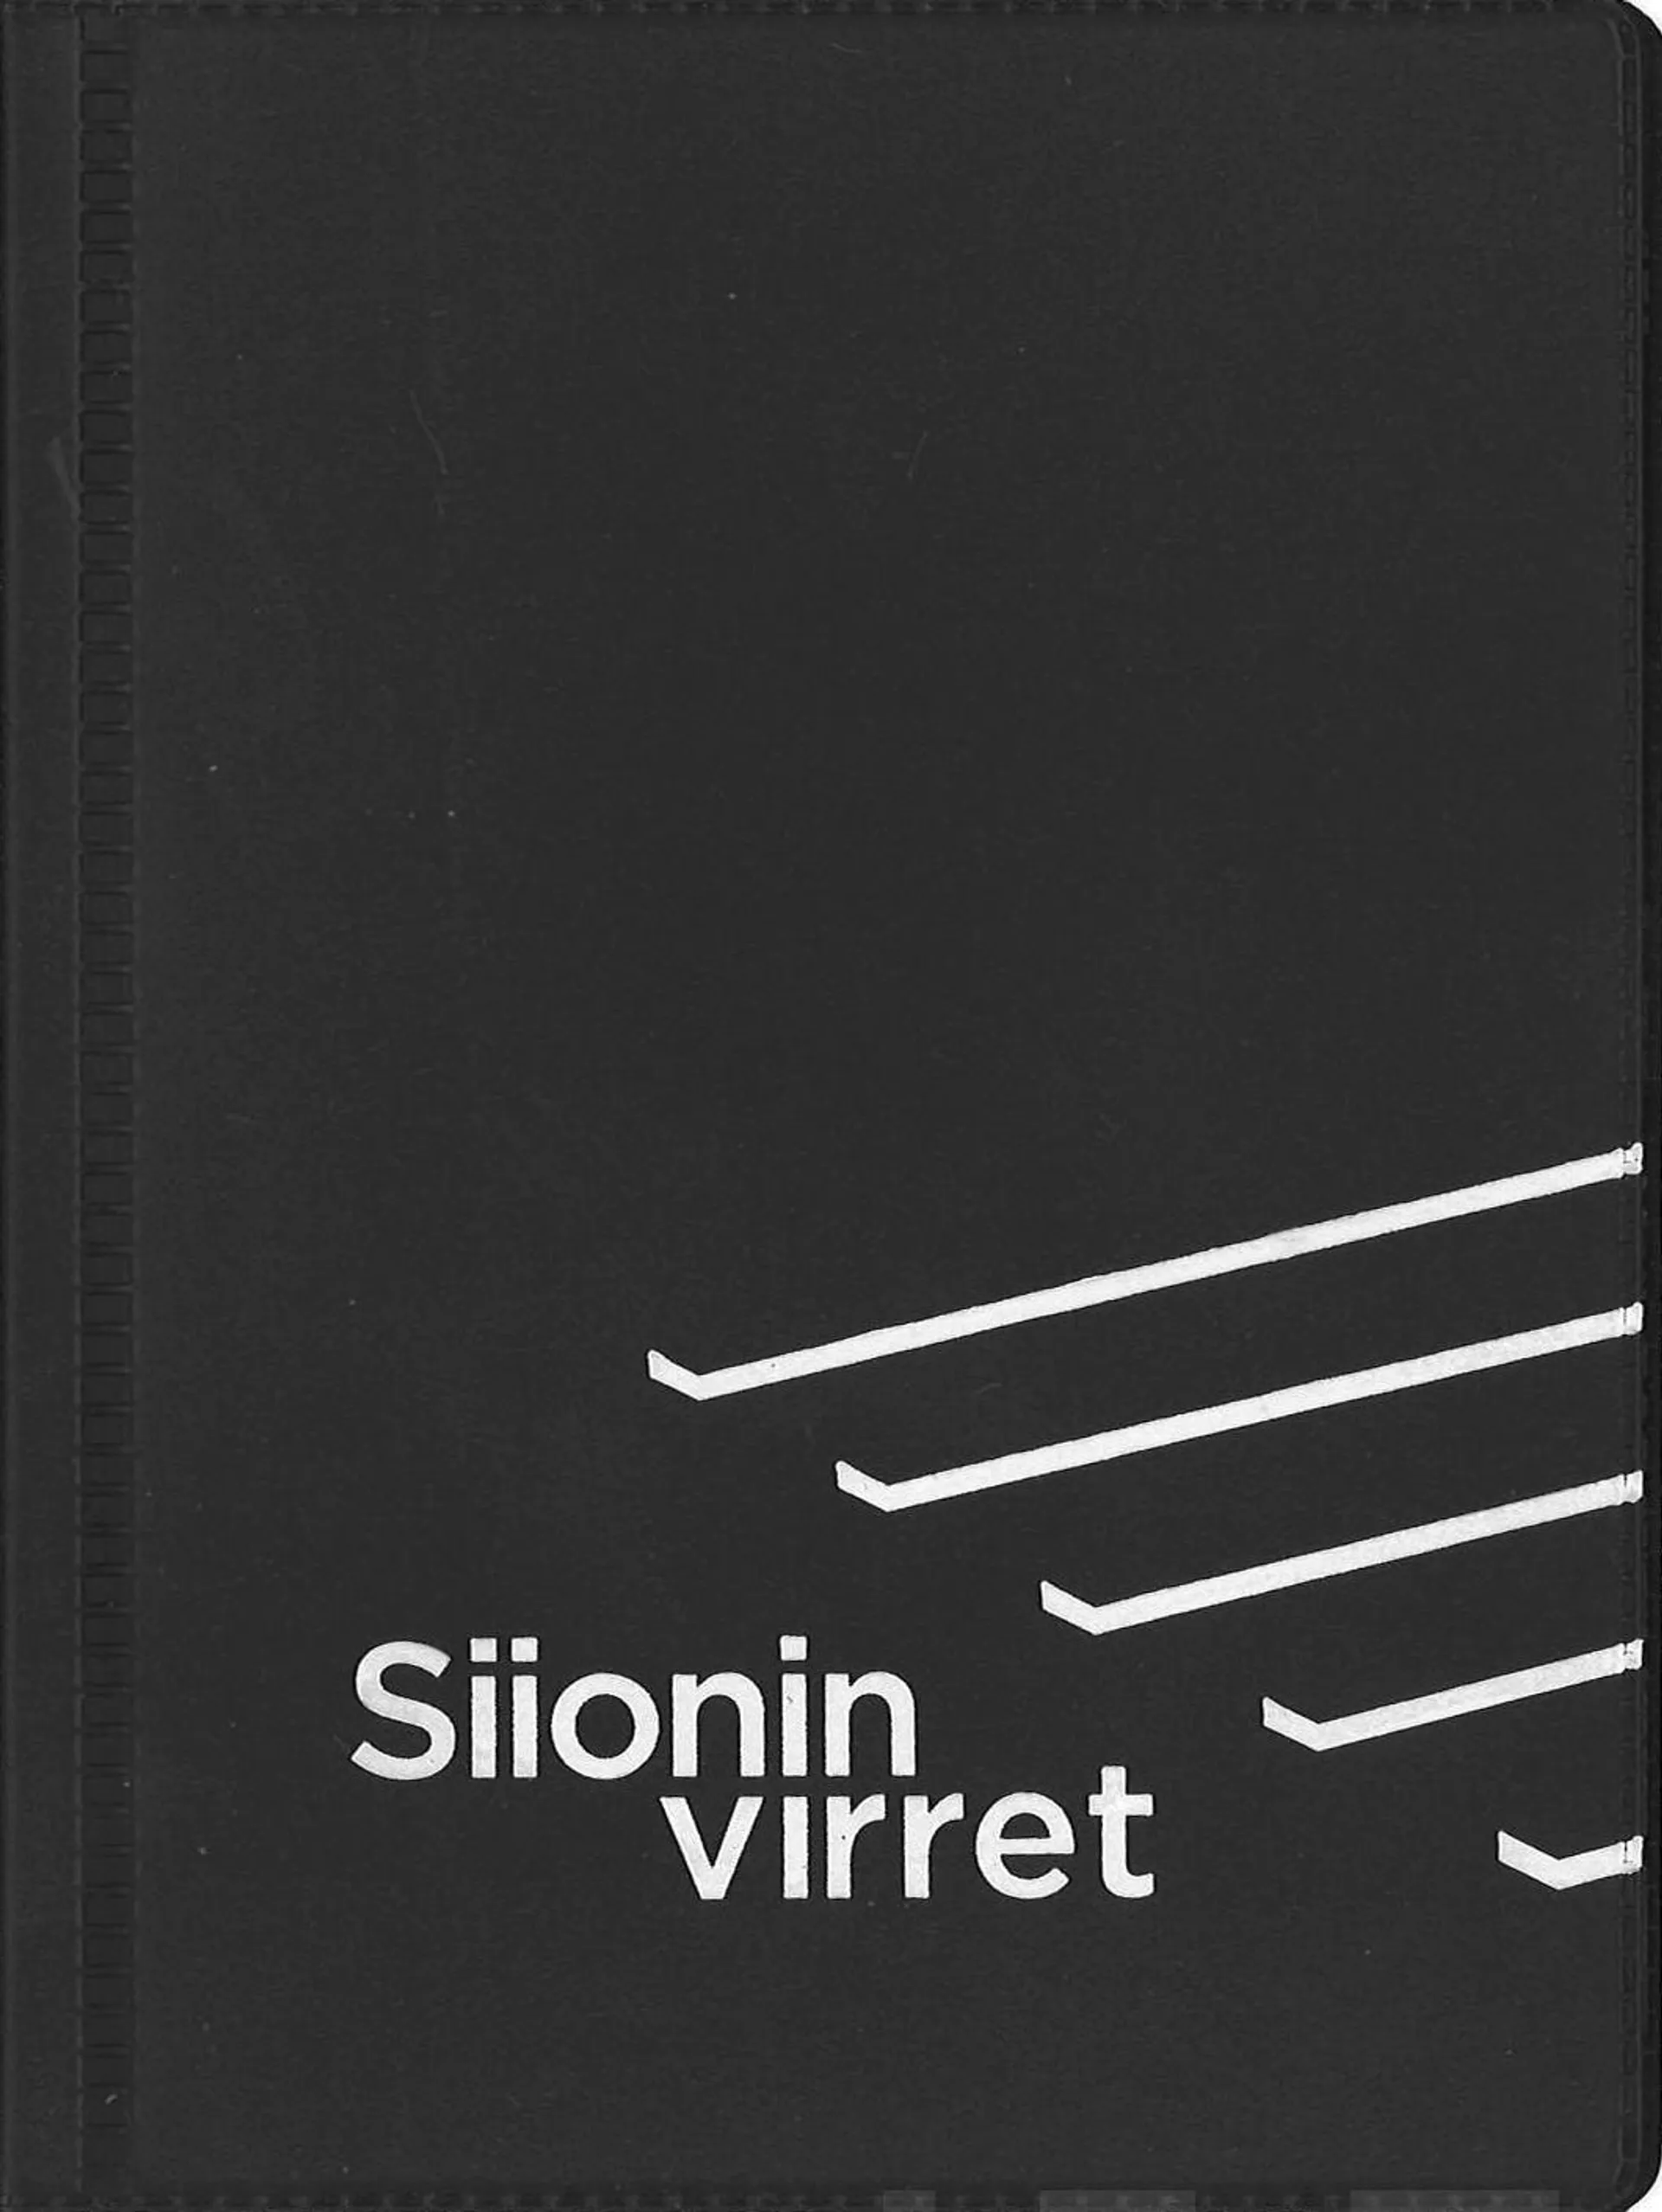 Siionin virret (musta, nuottipainos, iso teksti, 125x185 mm)